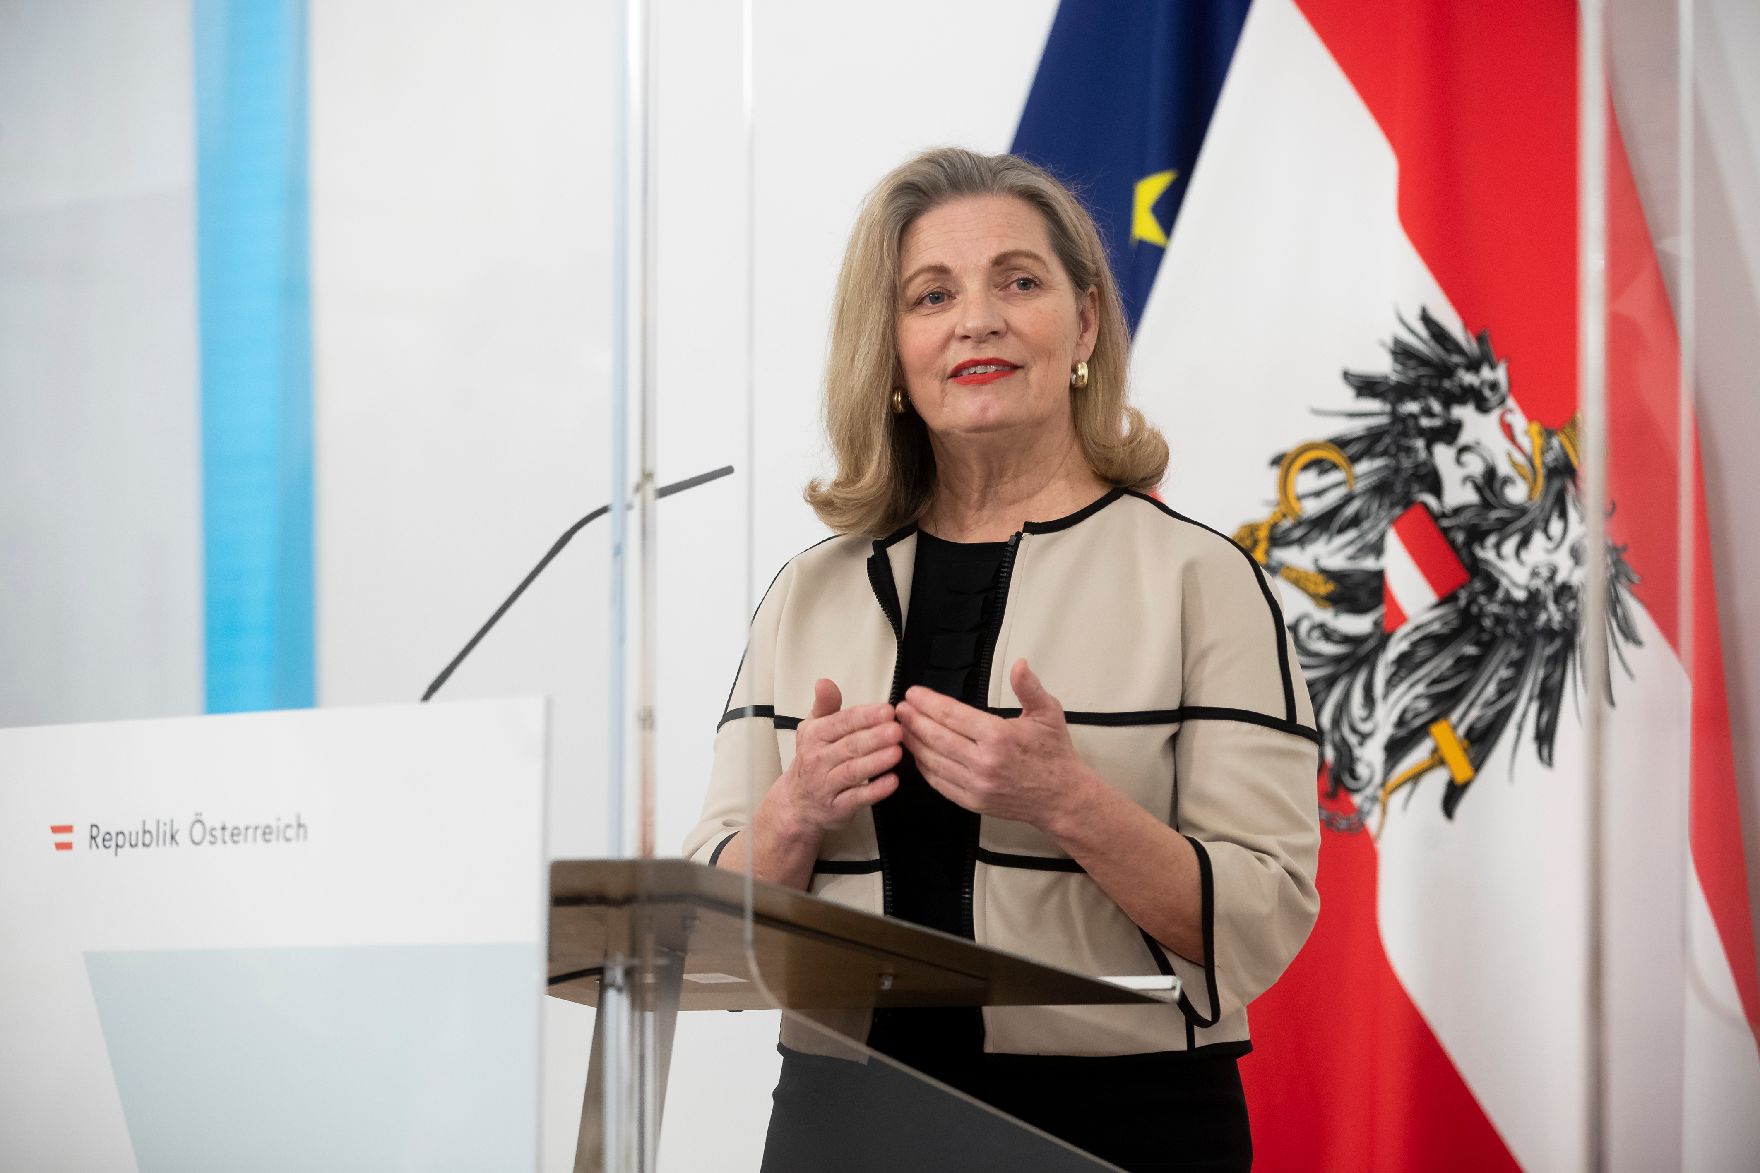 Am 5. Februar 2021 fand ein Pressestatement zu den Maßnahmen gegen die Krise im Bundeskanzleramt statt. Im Bild die Präsidentin der Apothekerkammer, Ulrike Mursch-Edlmayr.